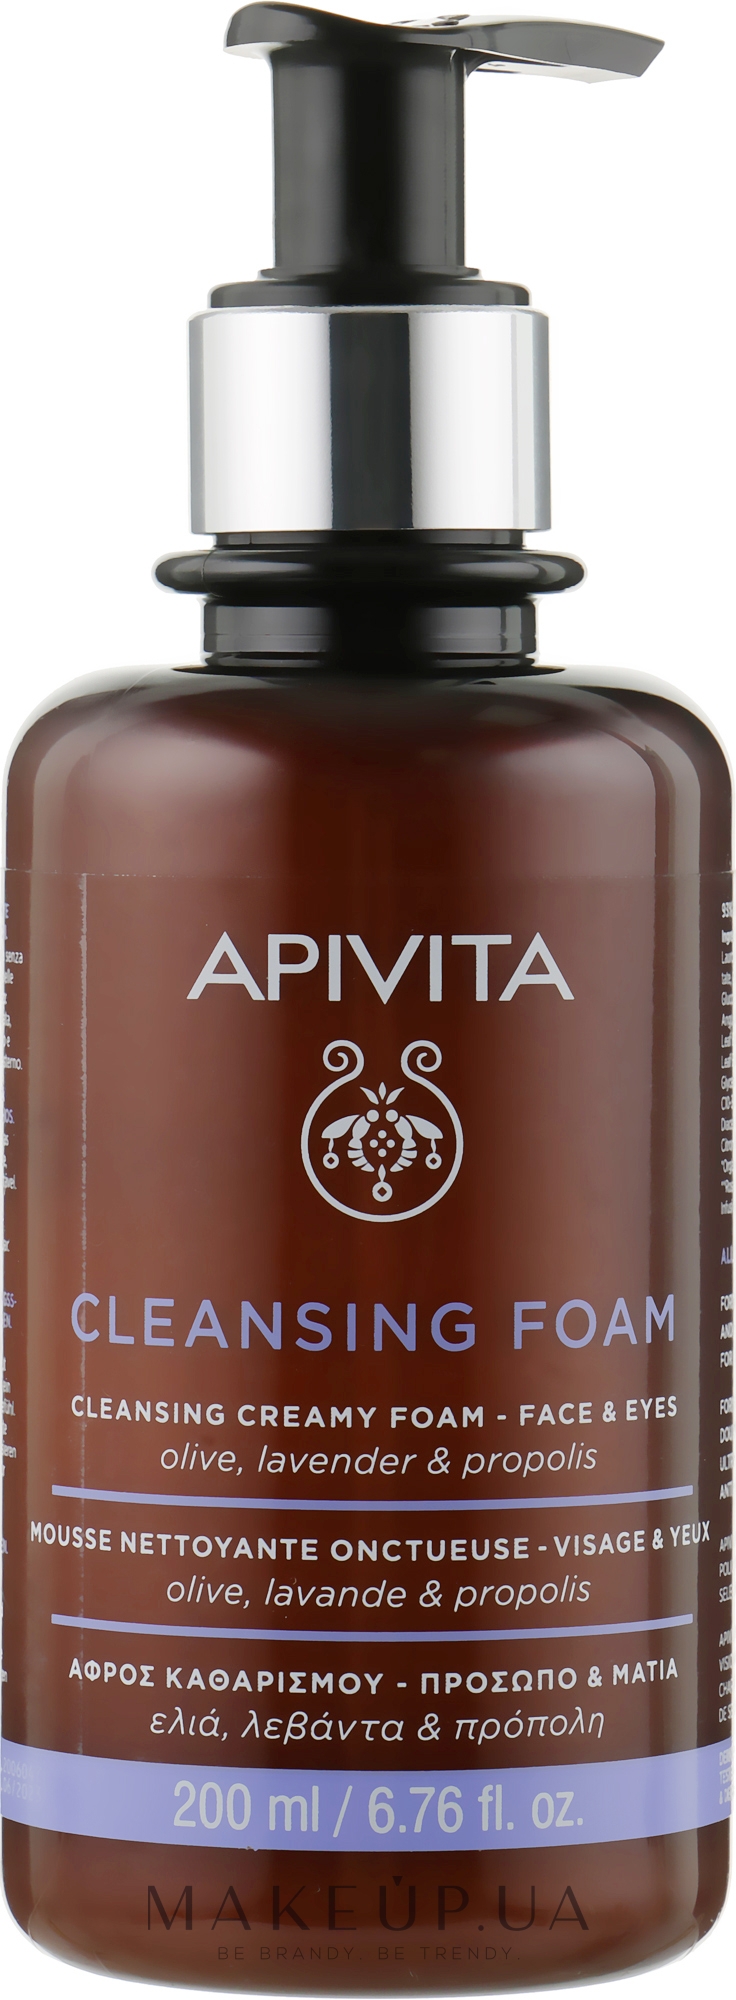 Пінка для очищення обличчя й очей з оливою, лавандою і прополісом - Apivita Face & Eye Olive Lavender & Propolis Cleansing Foam — фото 200ml